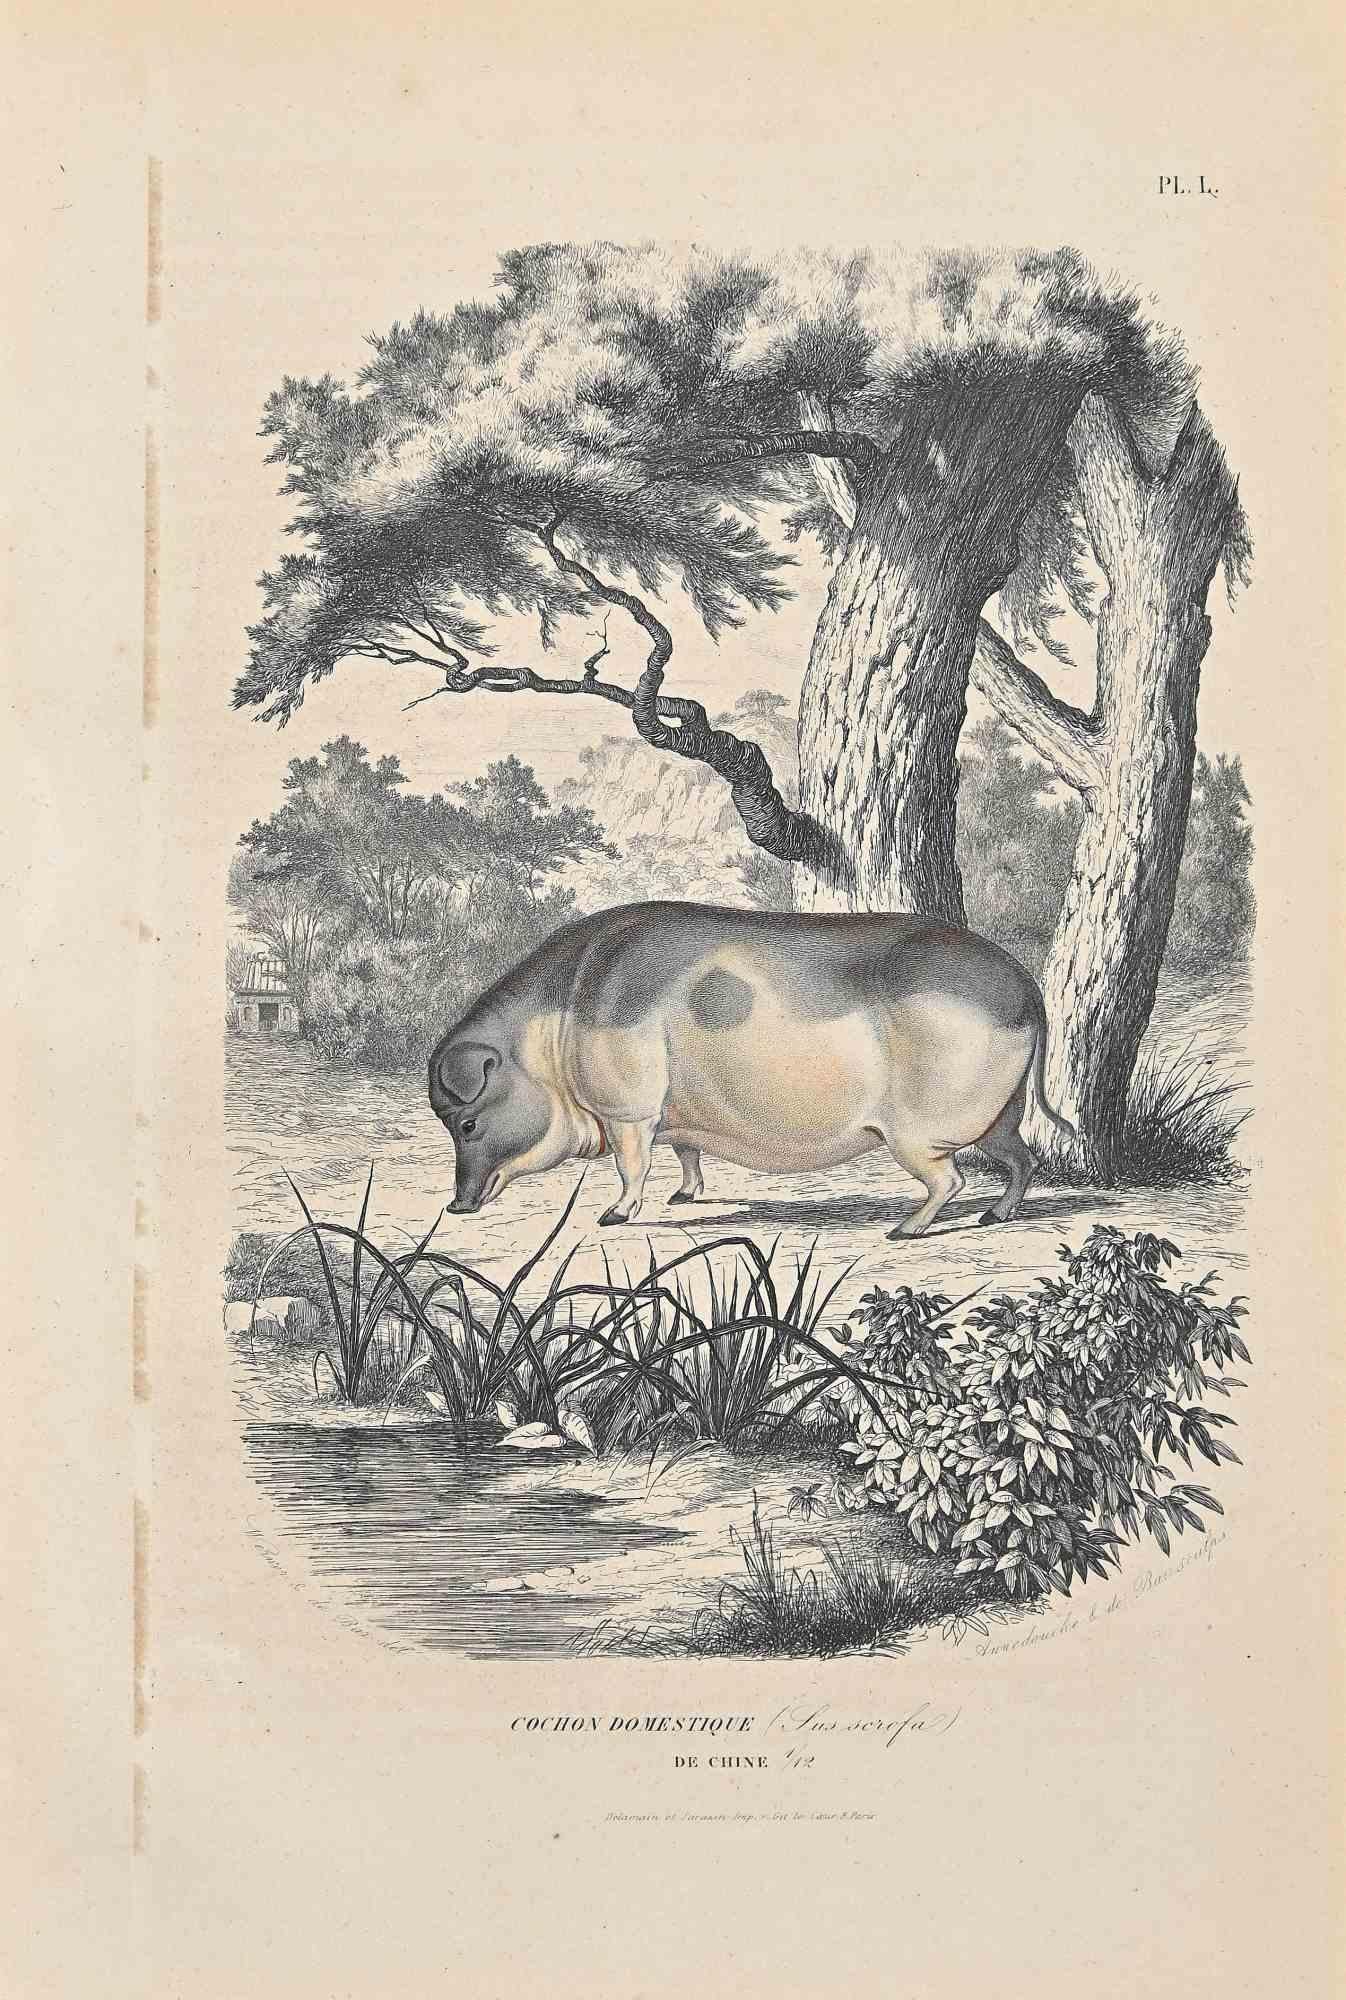 Chinesisches Hausschwein ist eine Originallithografie auf elfenbeinfarbenem Papier, die von Paul Gervais (1816-1879) geschaffen wurde. Das Kunstwerk stammt aus der Serie "Les Trois Règnes de la Nature" und wurde 1854 veröffentlicht.

Guter Zustand